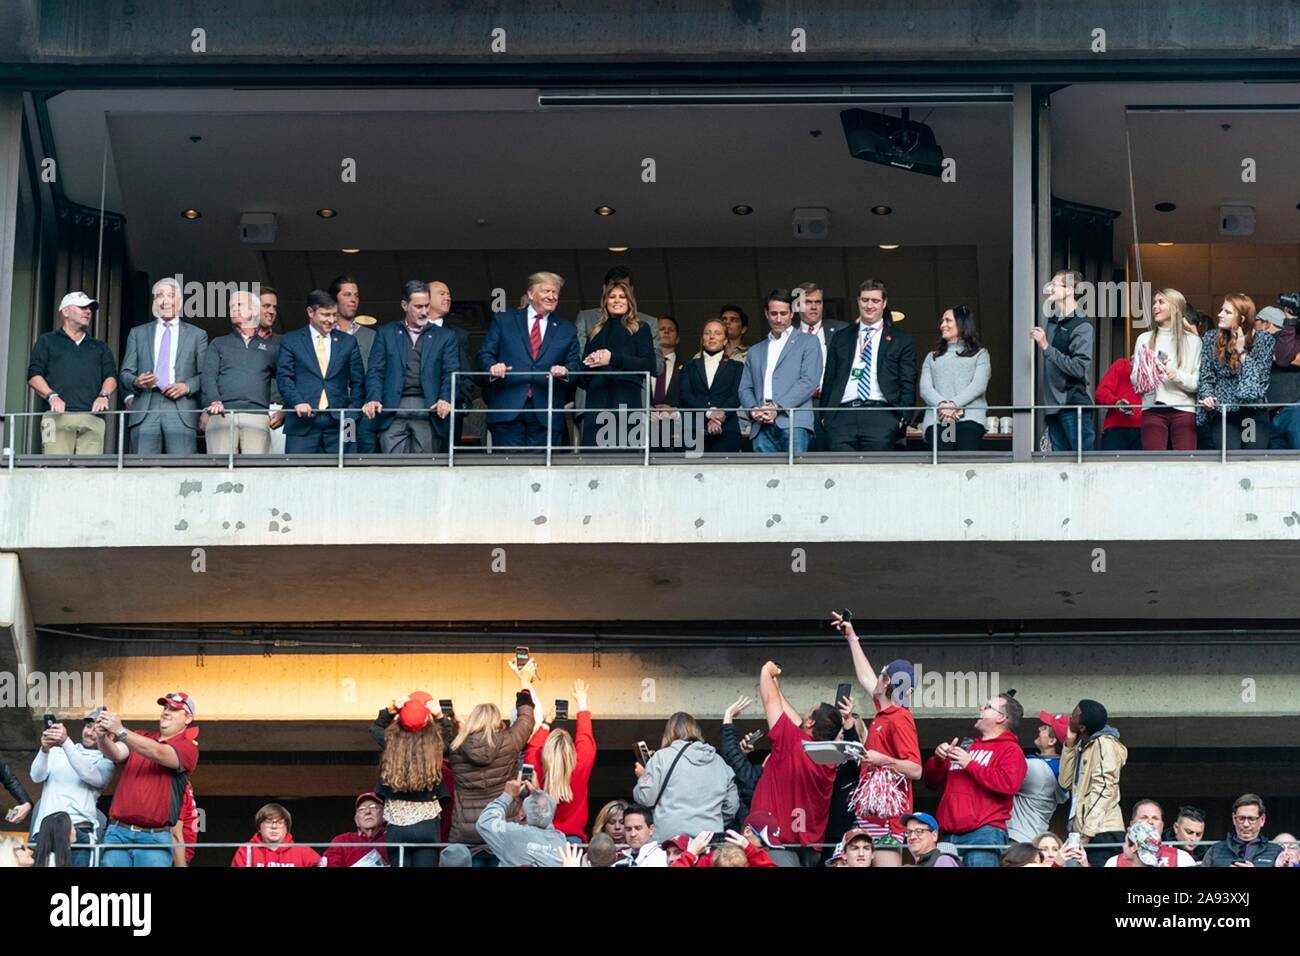 Président américain Donald Trump et la Première Dame Melania Trump vagues lorsqu'elles sont introduites au début de l'Université de l'Alabama contre l'Université d'état de la Louisiane au jeu de football Bryant-Denny Stadium le 9 novembre 2019 à Tuscaloosa, Alabama. Banque D'Images